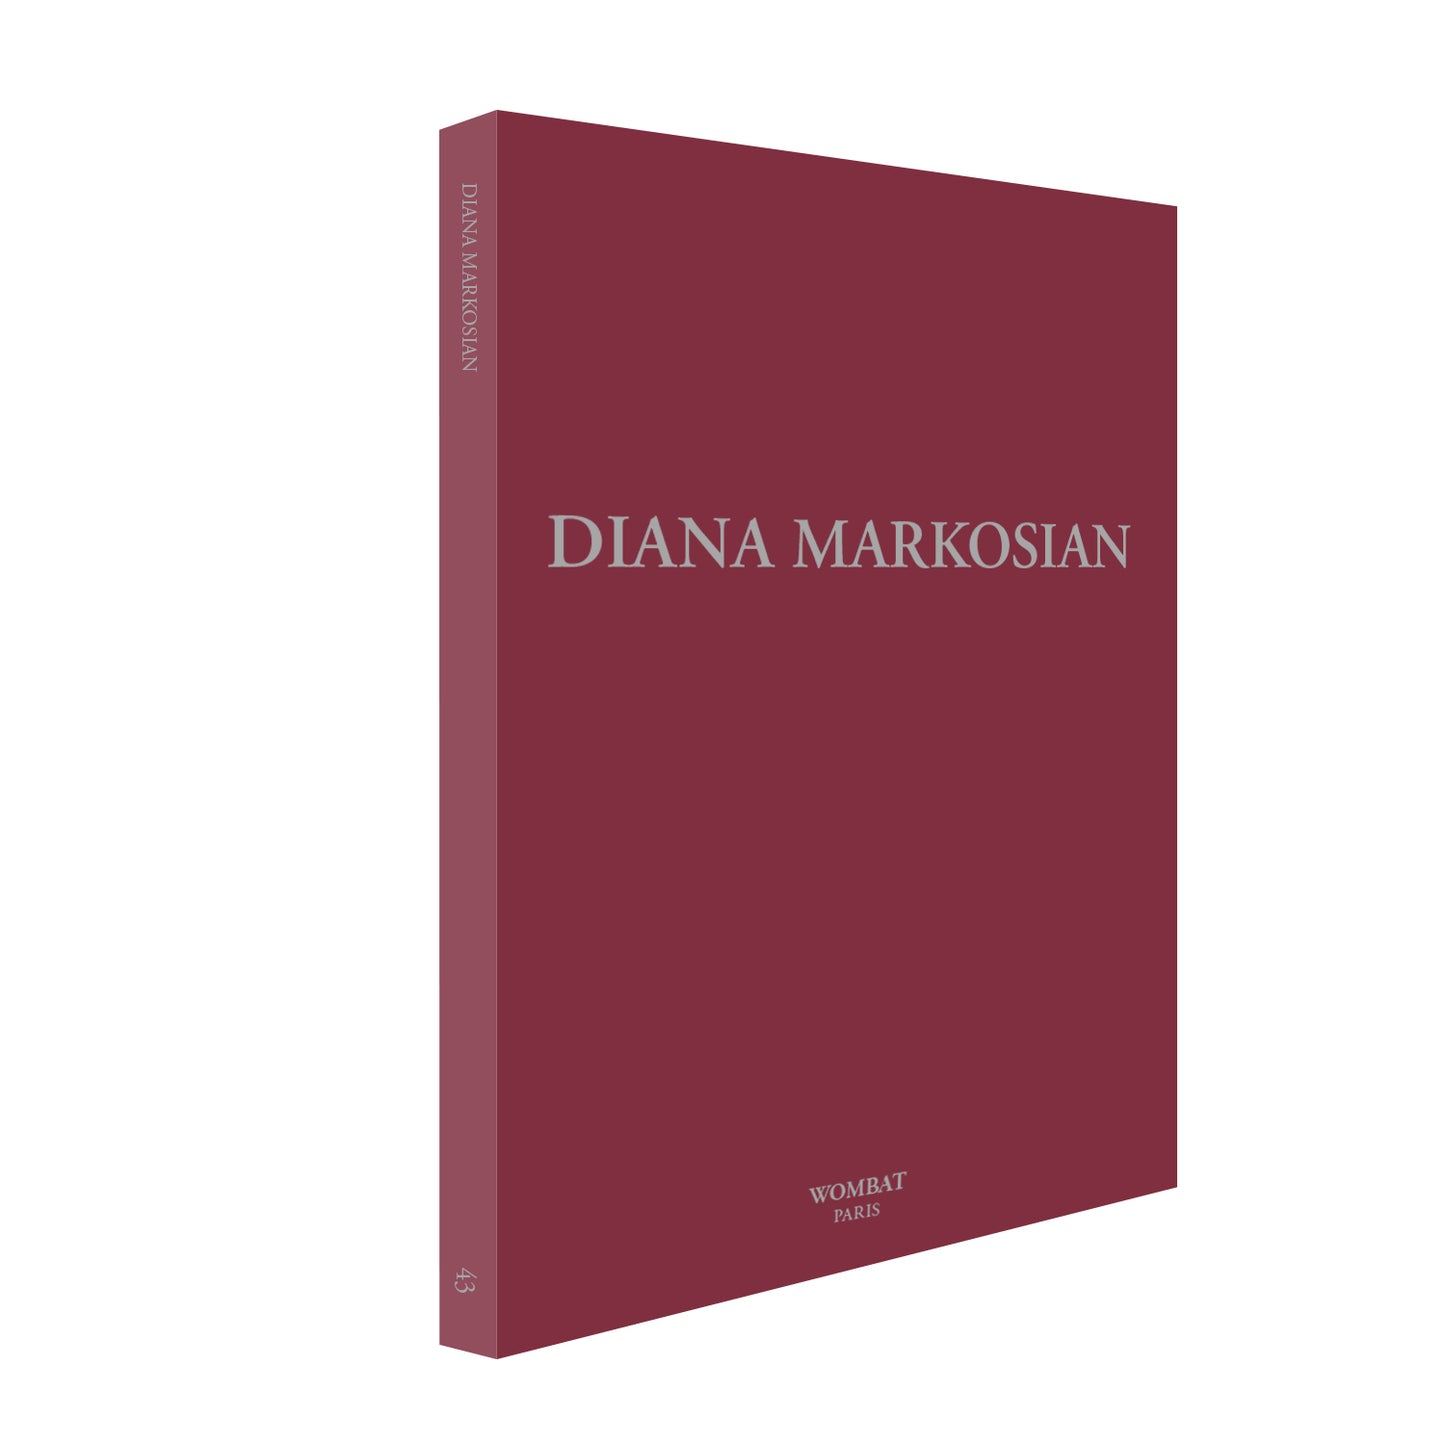 Diana Markosian - Edition signée